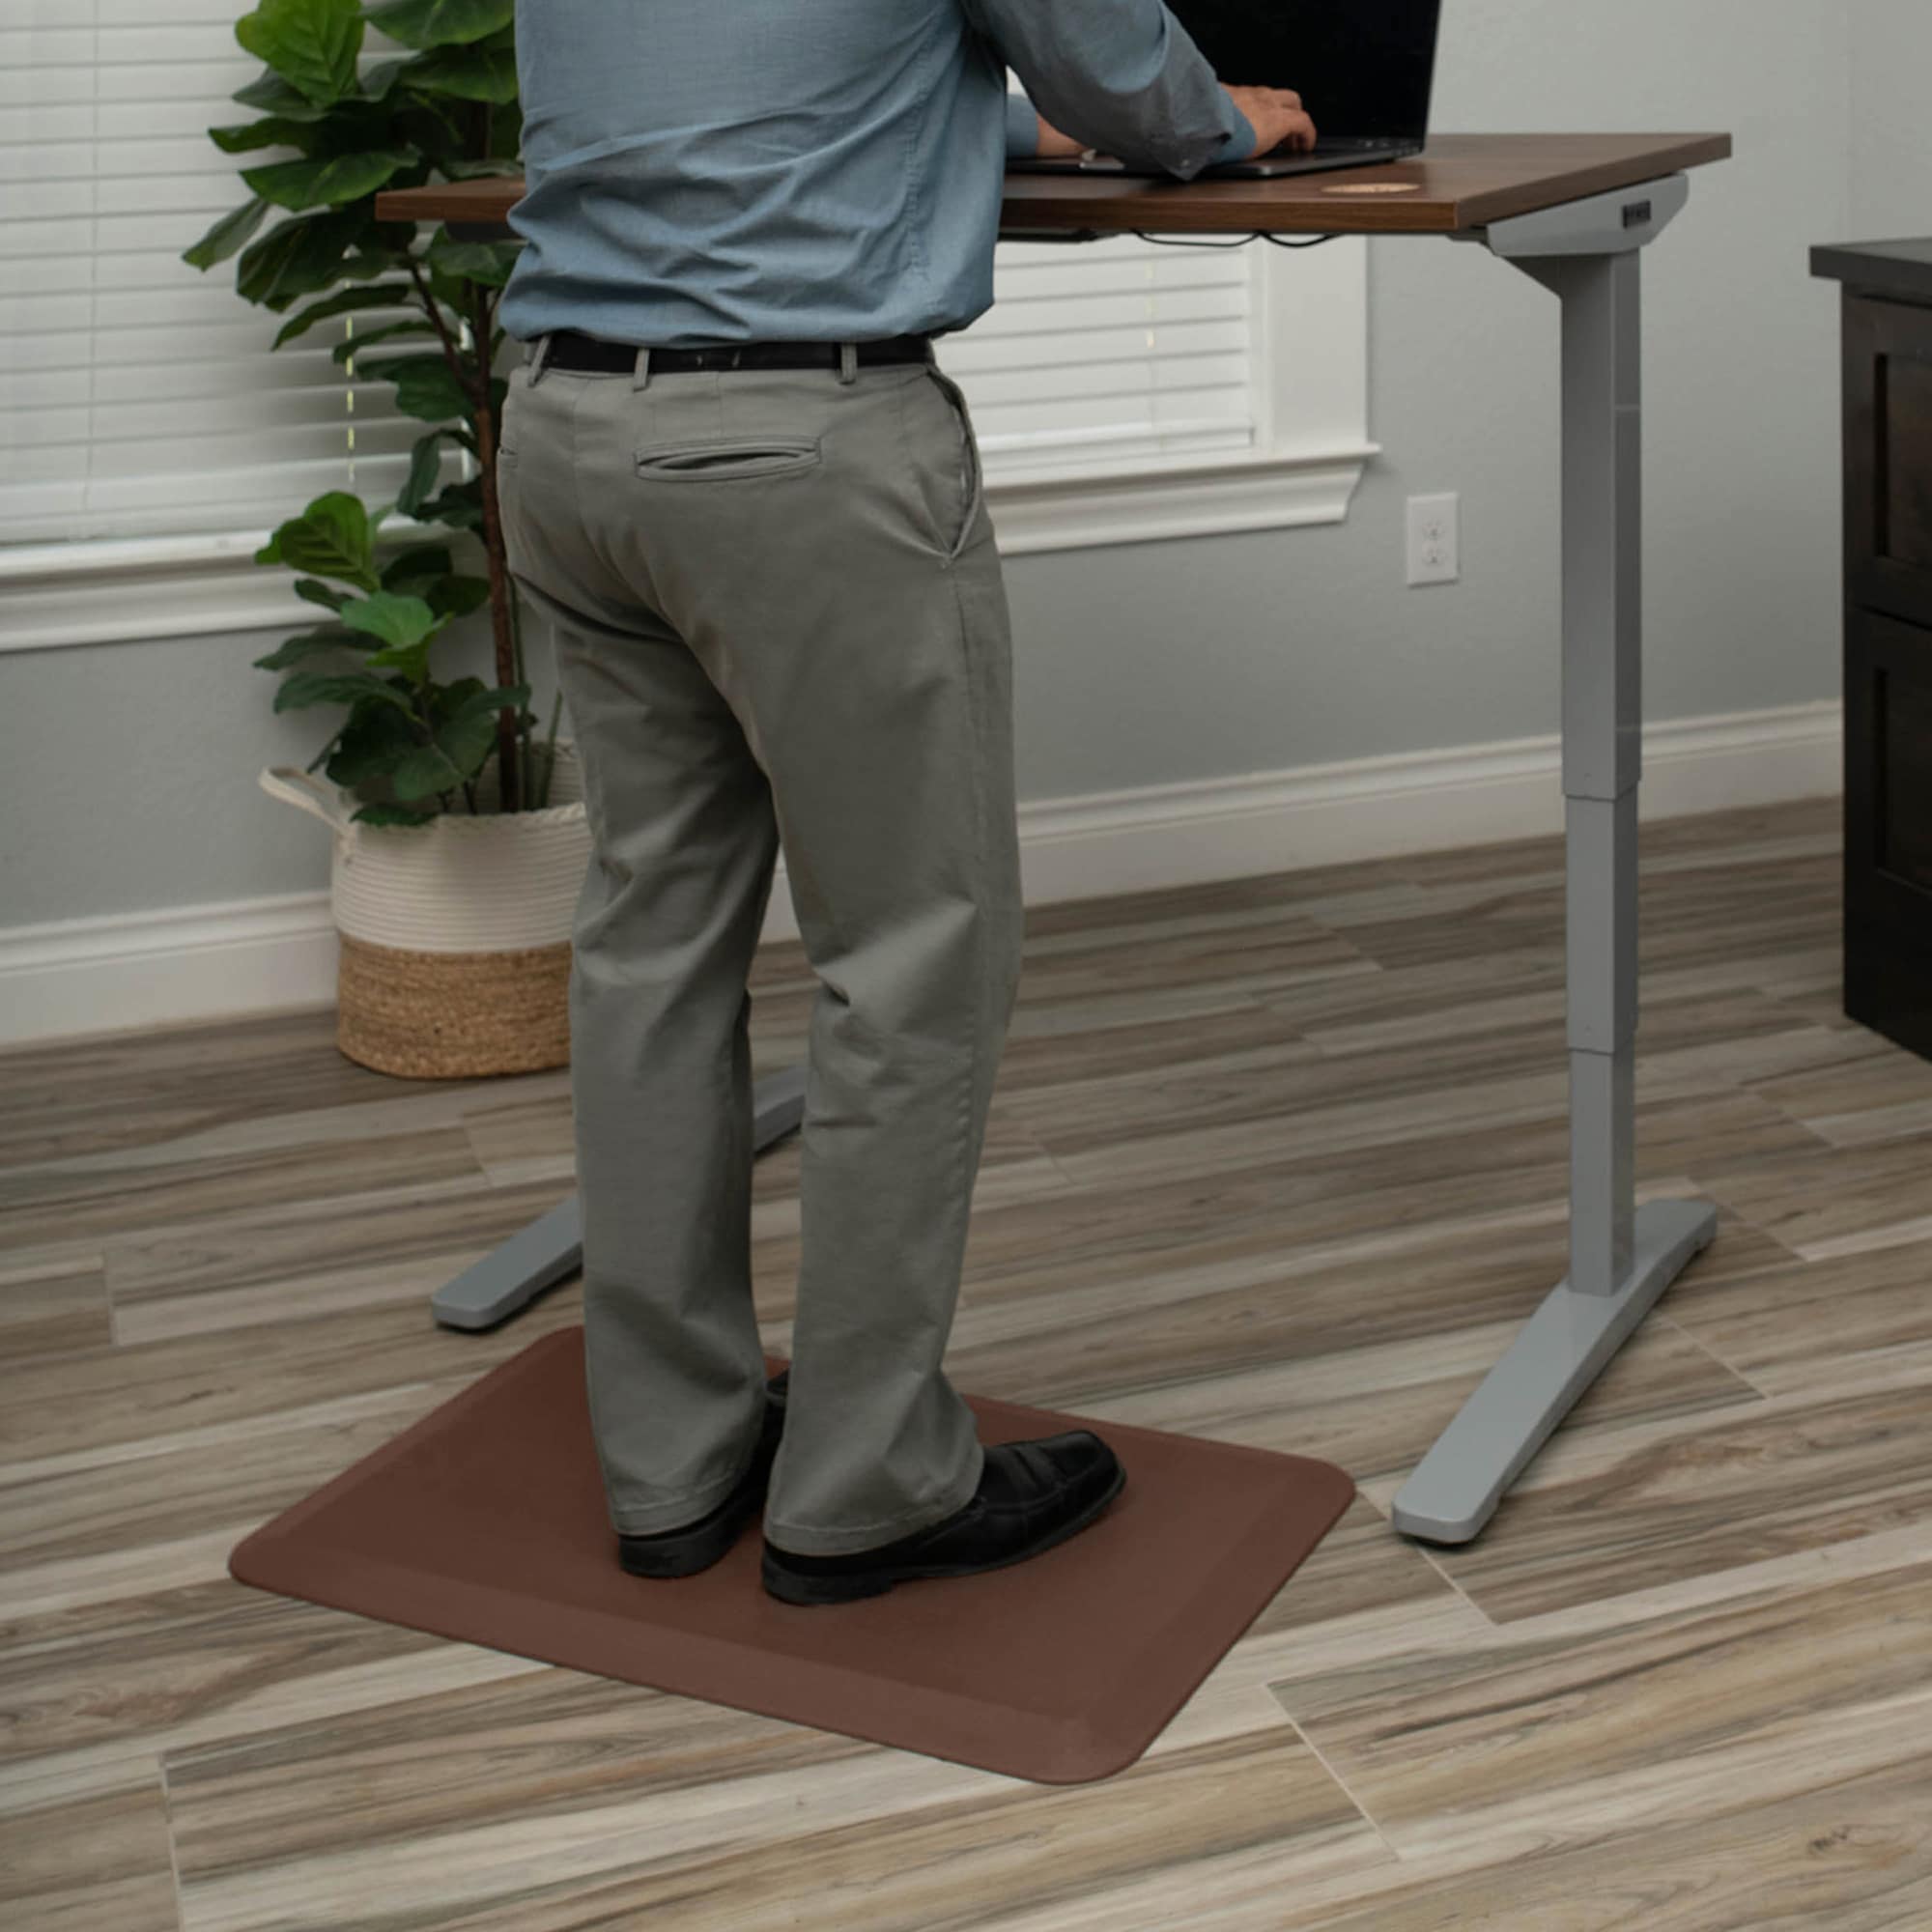 Extra Thick anti Fatigue Mat Floor Mat, Standing Desk Mat Memory